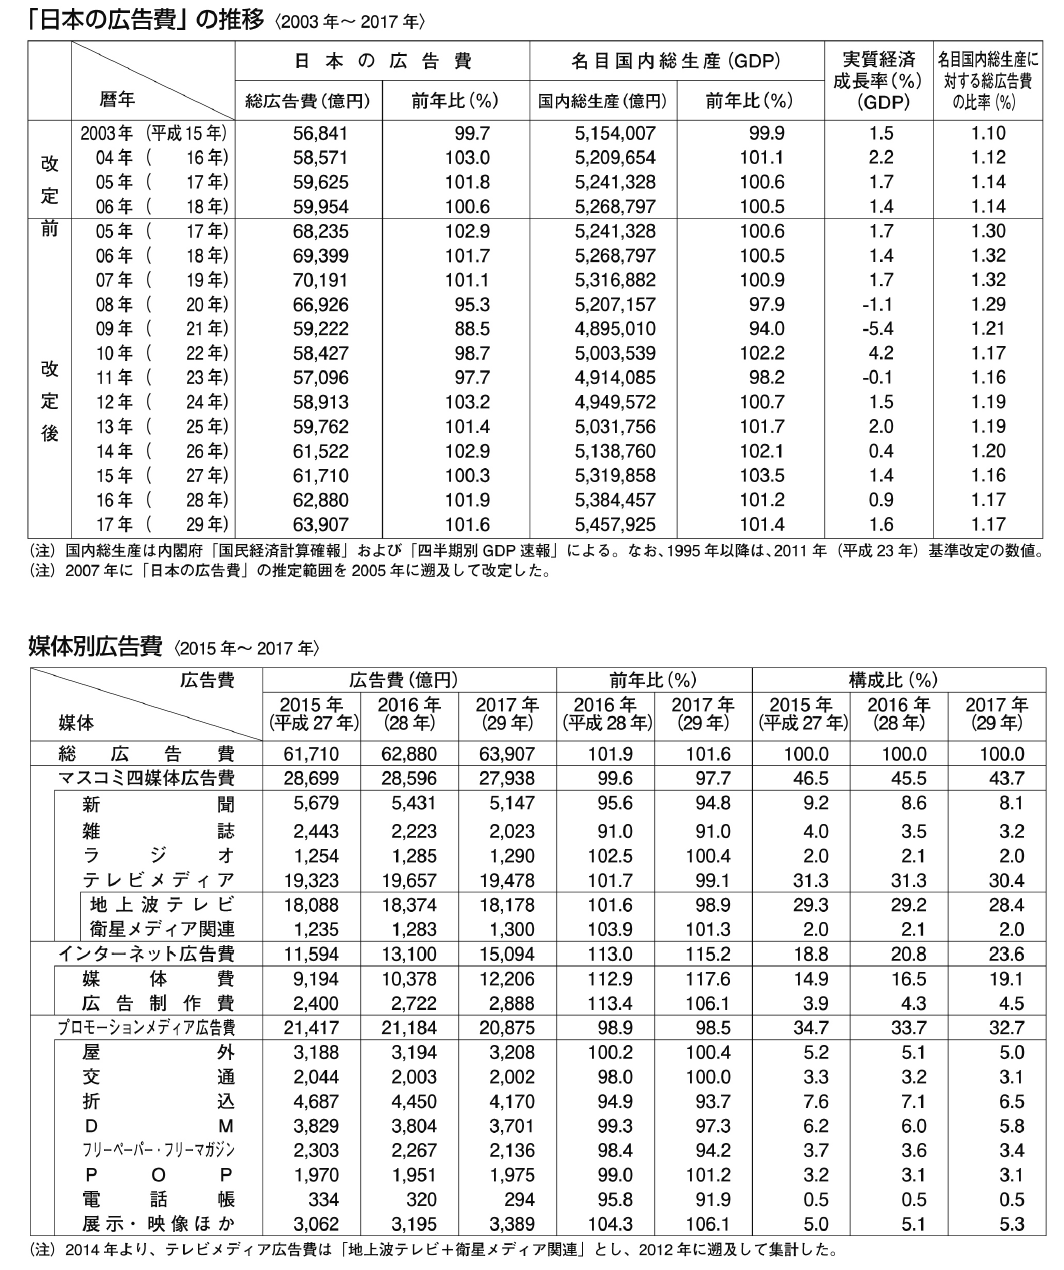 「日本の広告費」の推移図